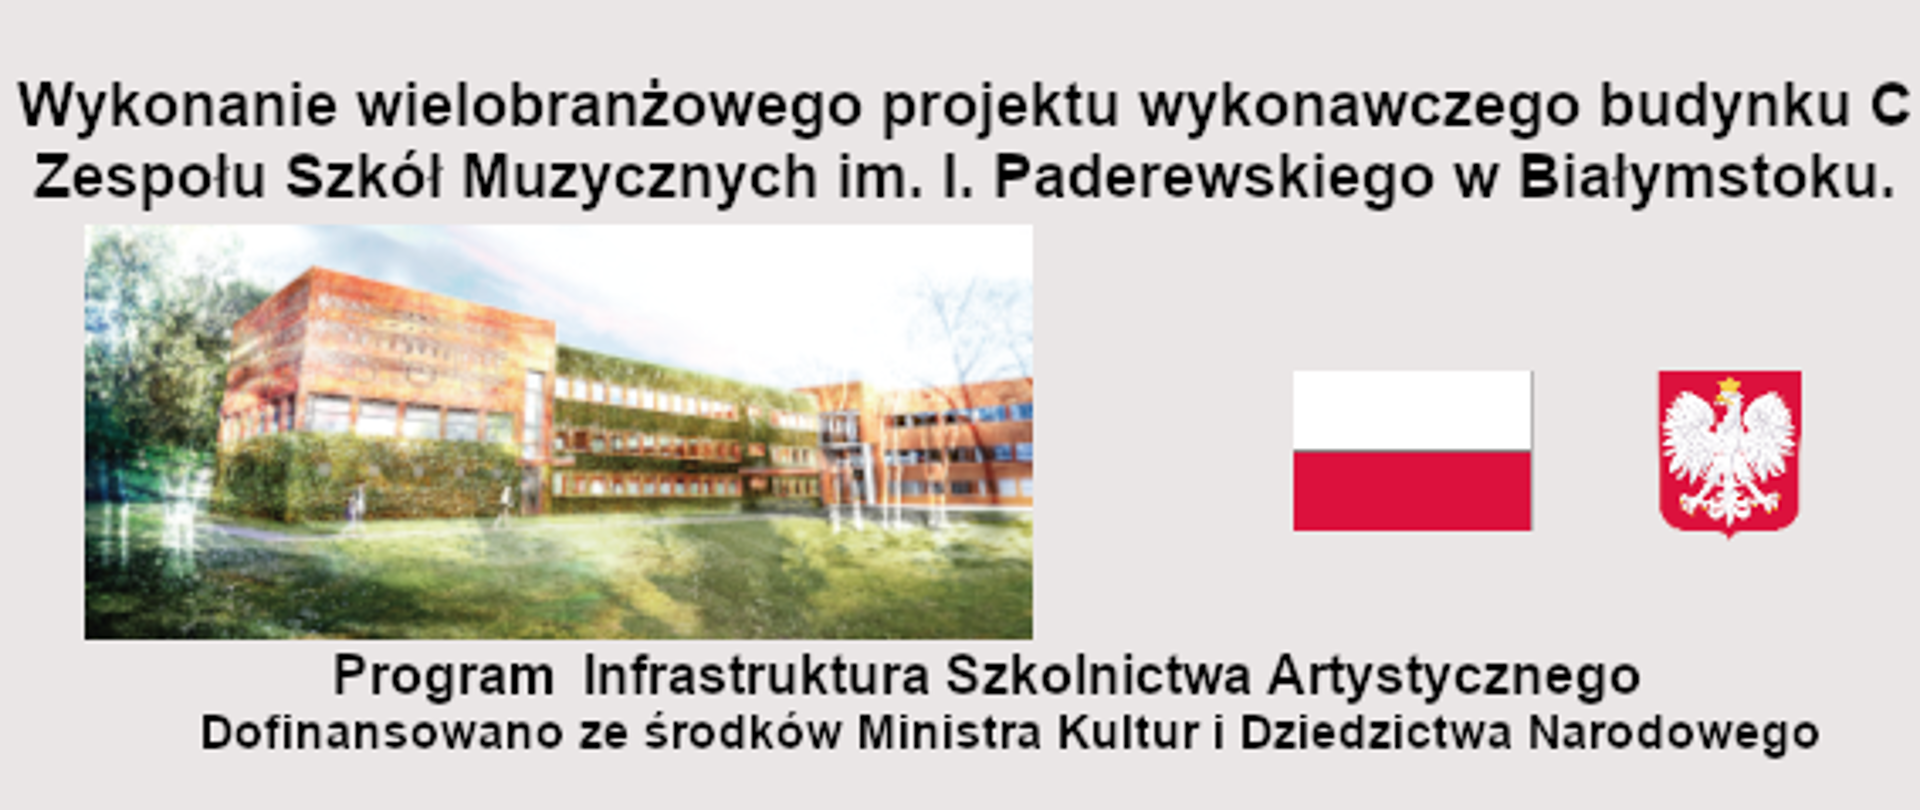 Wykonanie wielobranżowego projektu wykonawczego budynku C Zespołu Szkół Muzycznych im. I. Paderewskiego w Białymstoku.